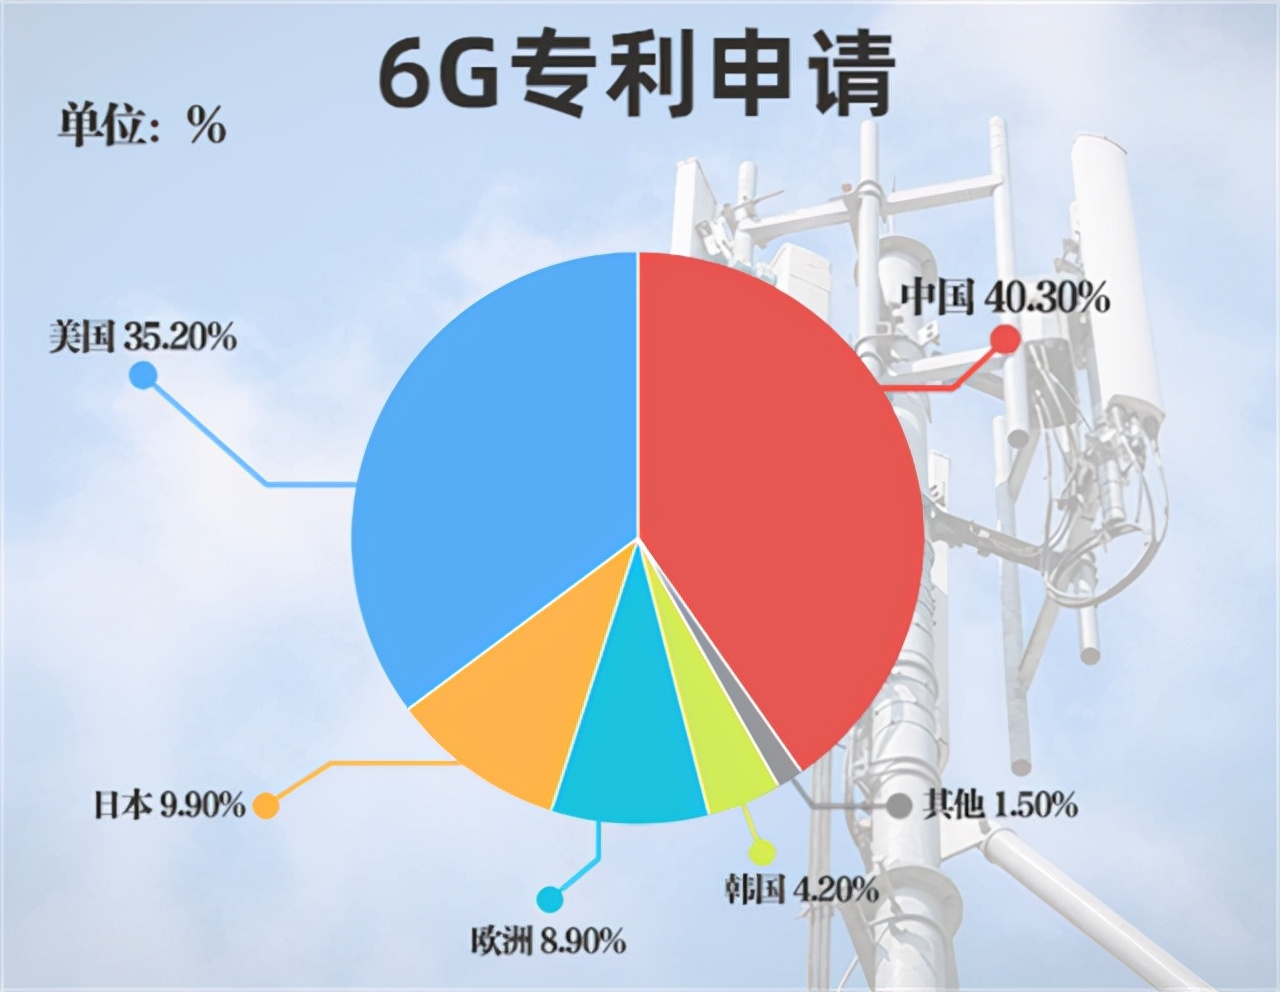 武安市5G网络的快速普及带来的生活巨变和科技进步  第1张